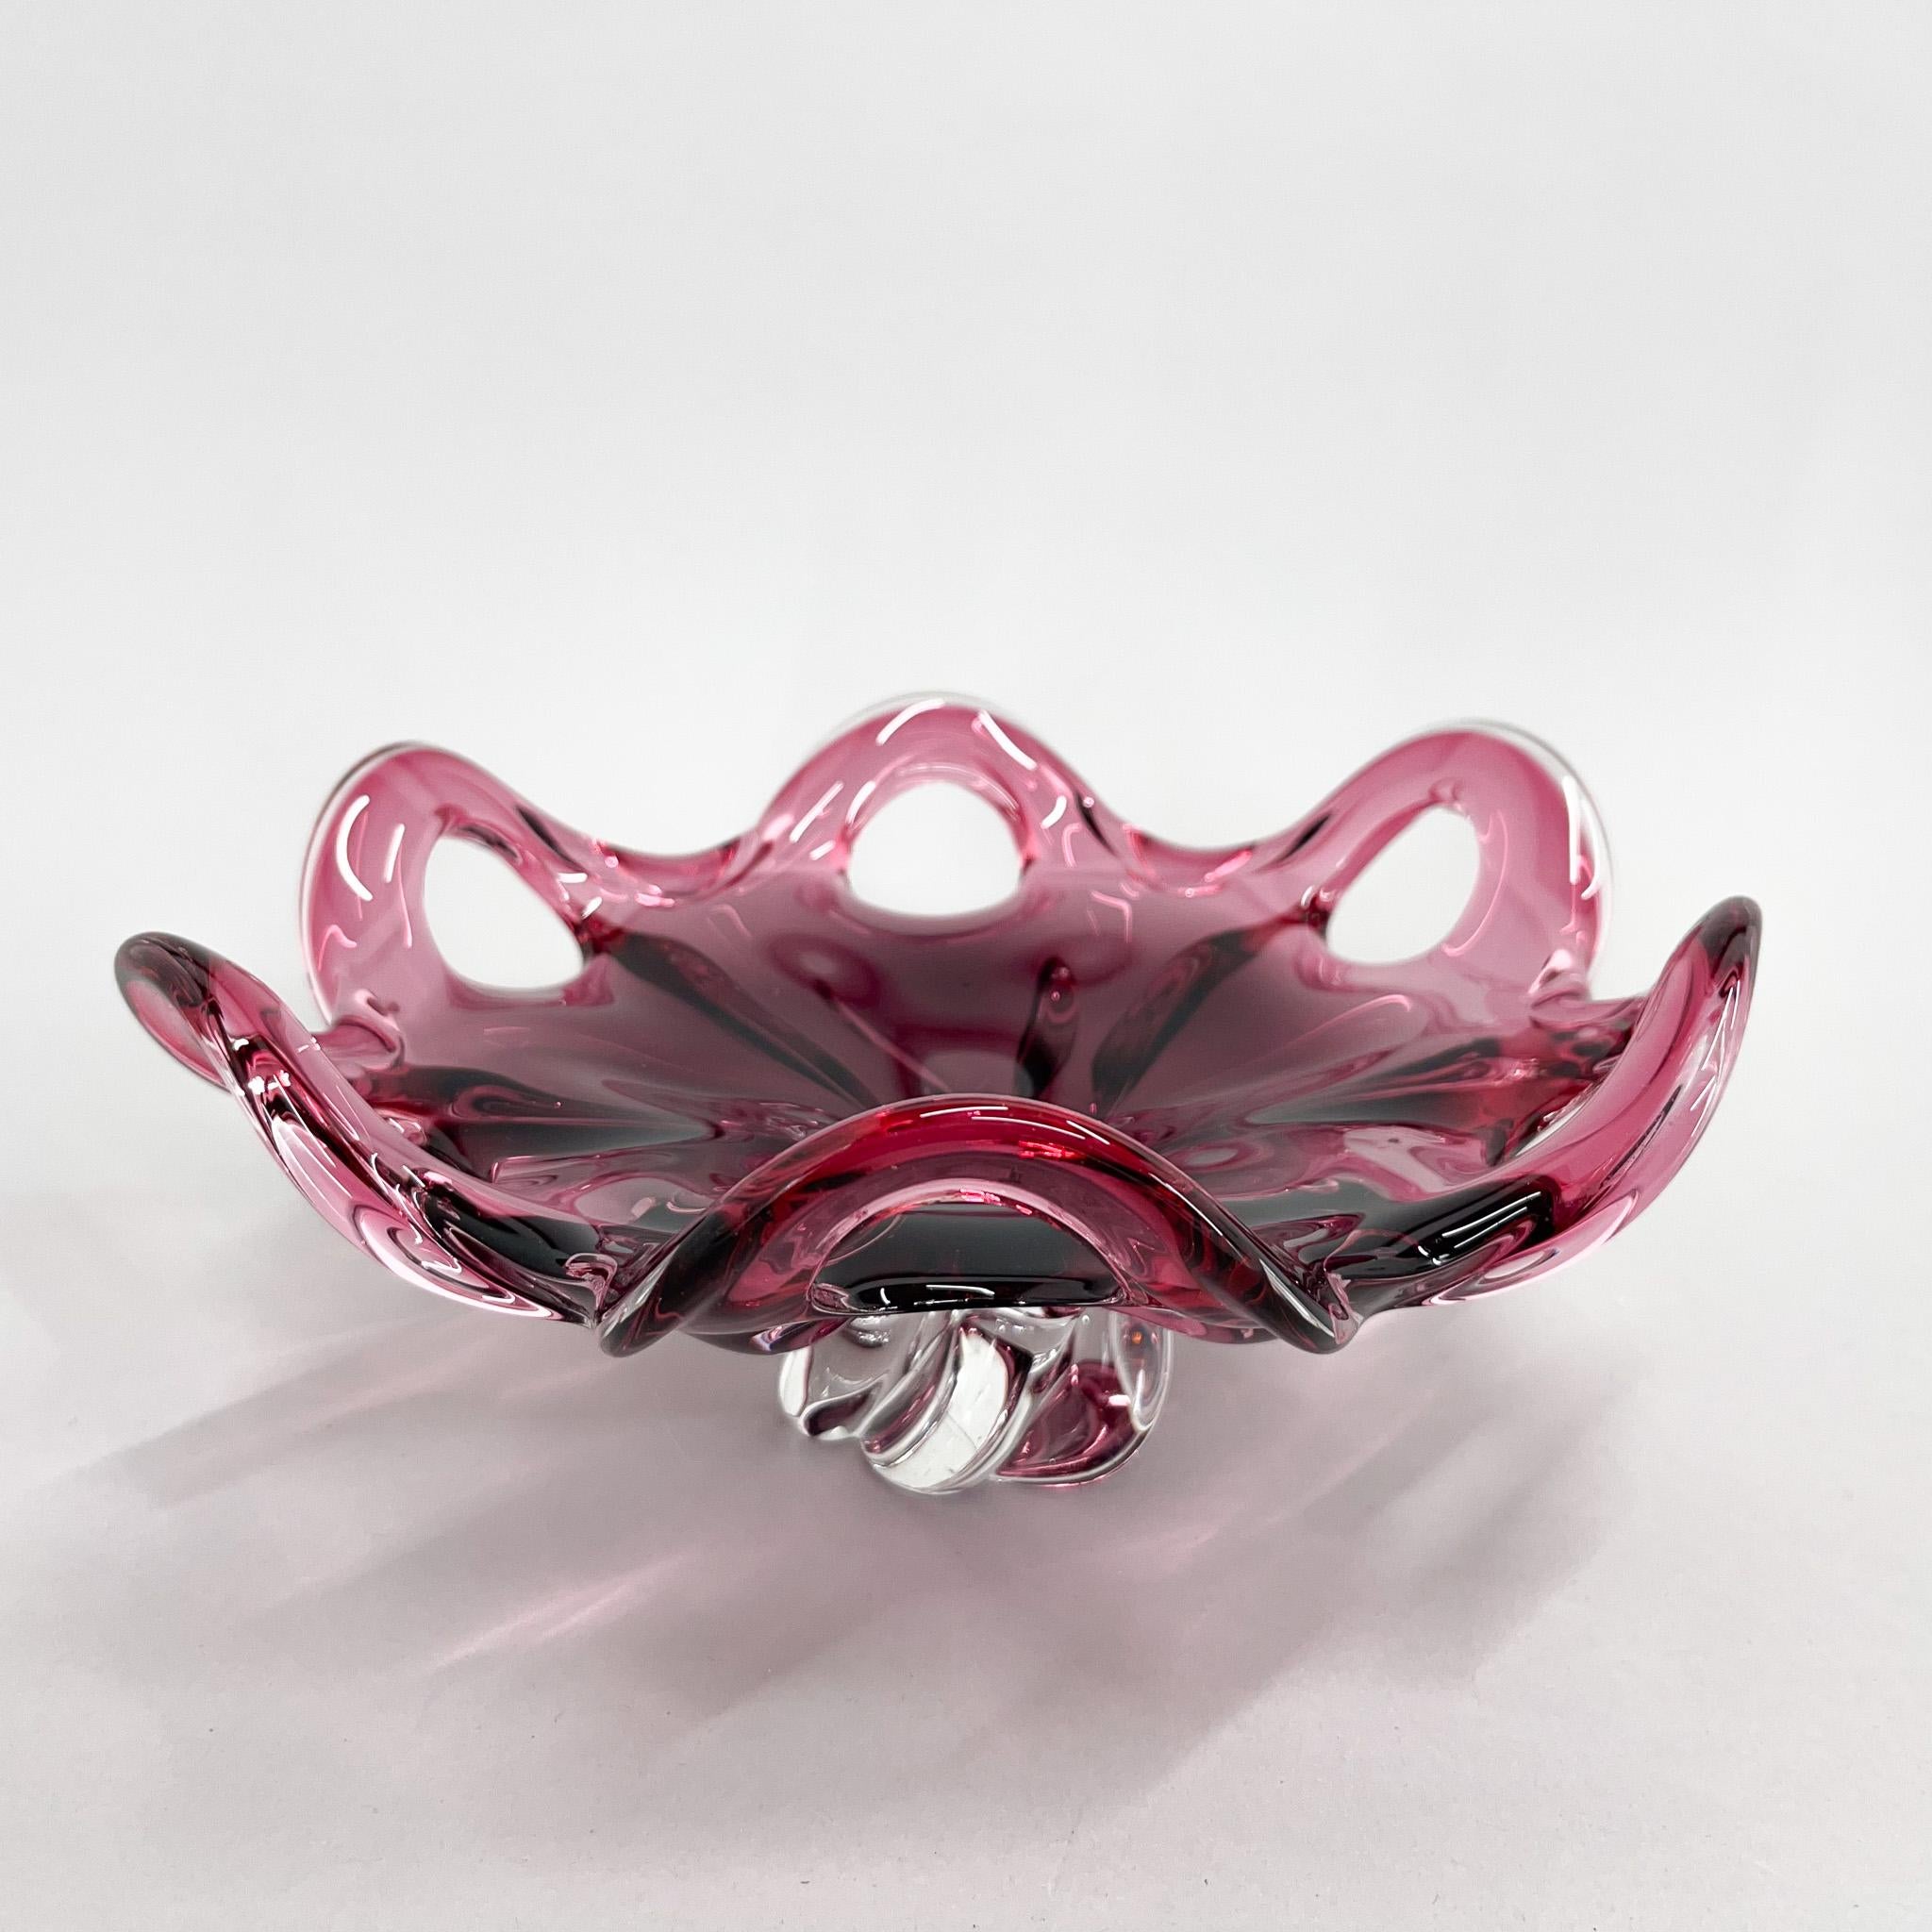 Mid-Century Modern Czech Art Glass Bowl by Josef Hospodka for Chribska Glassworks, 1960s